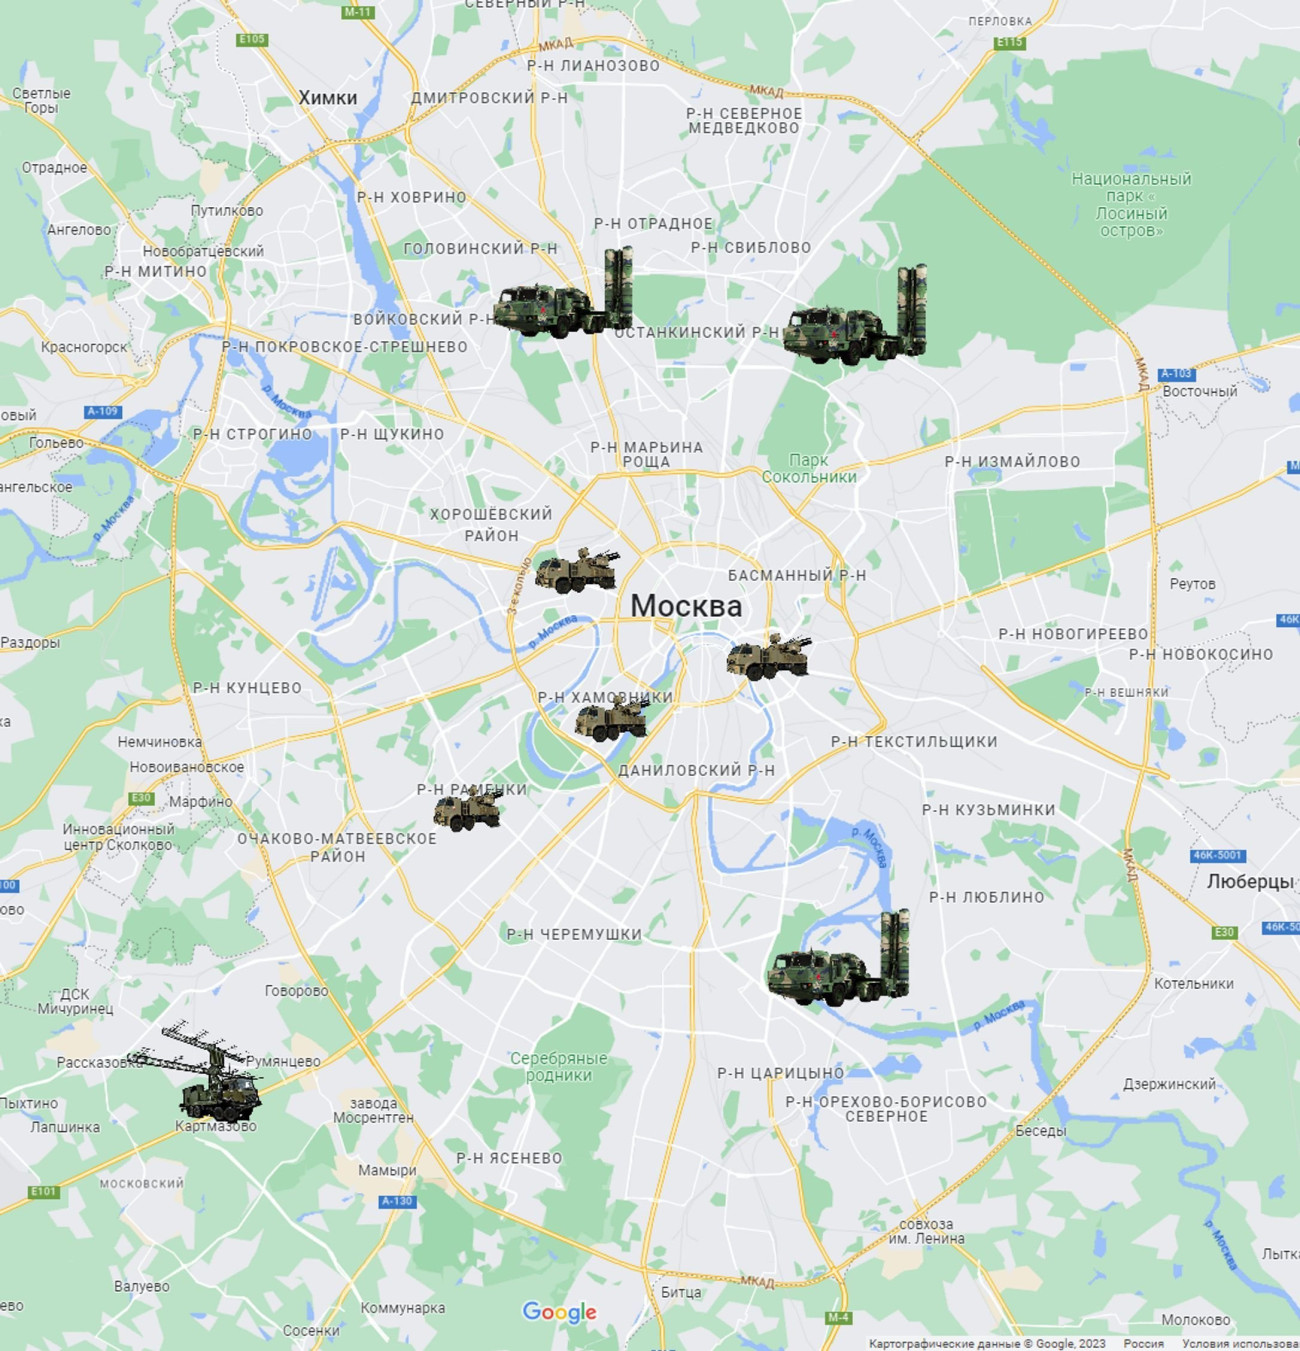 A Moszkvát közvetlenül védő légvédelmi rendszerek valószínű elhelyezkedése. A három nagyobb az Sz-400-ast, míg a négy kisebb a Pancir Sz-2-t jelöli. A bal alsó sarokban lévő ábra pedig egy nagy hatótávolságú, lokátoros egység valószínű helyét jelöli. Forrás: Twitter/John Ridge